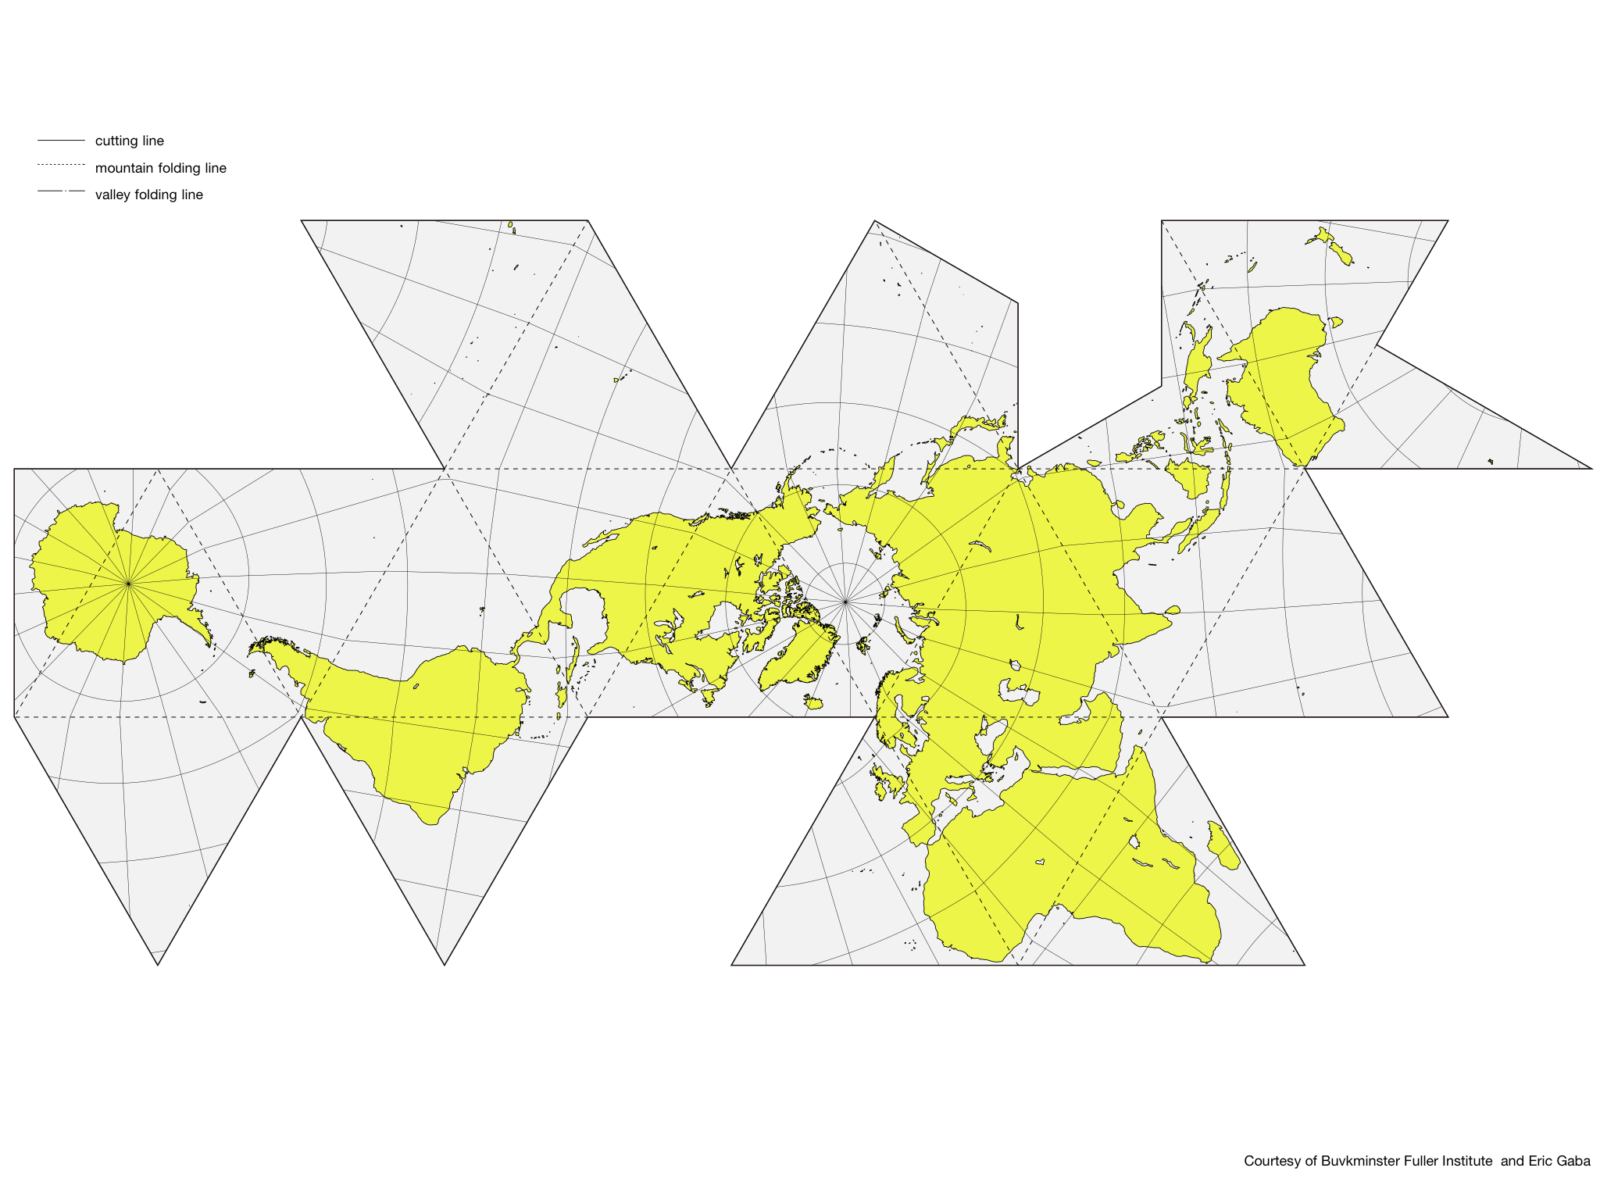 f5c88809c713a8ad3188e1bc123a0728 1 A Deception-Free Real World Map – AuthaGraph World Map Authagraph, Authagraph Harita, Authagraph map, Authagraph Projection, education, Geography, Hajime Narukawa, Narukawa Lab, Real World Map, World